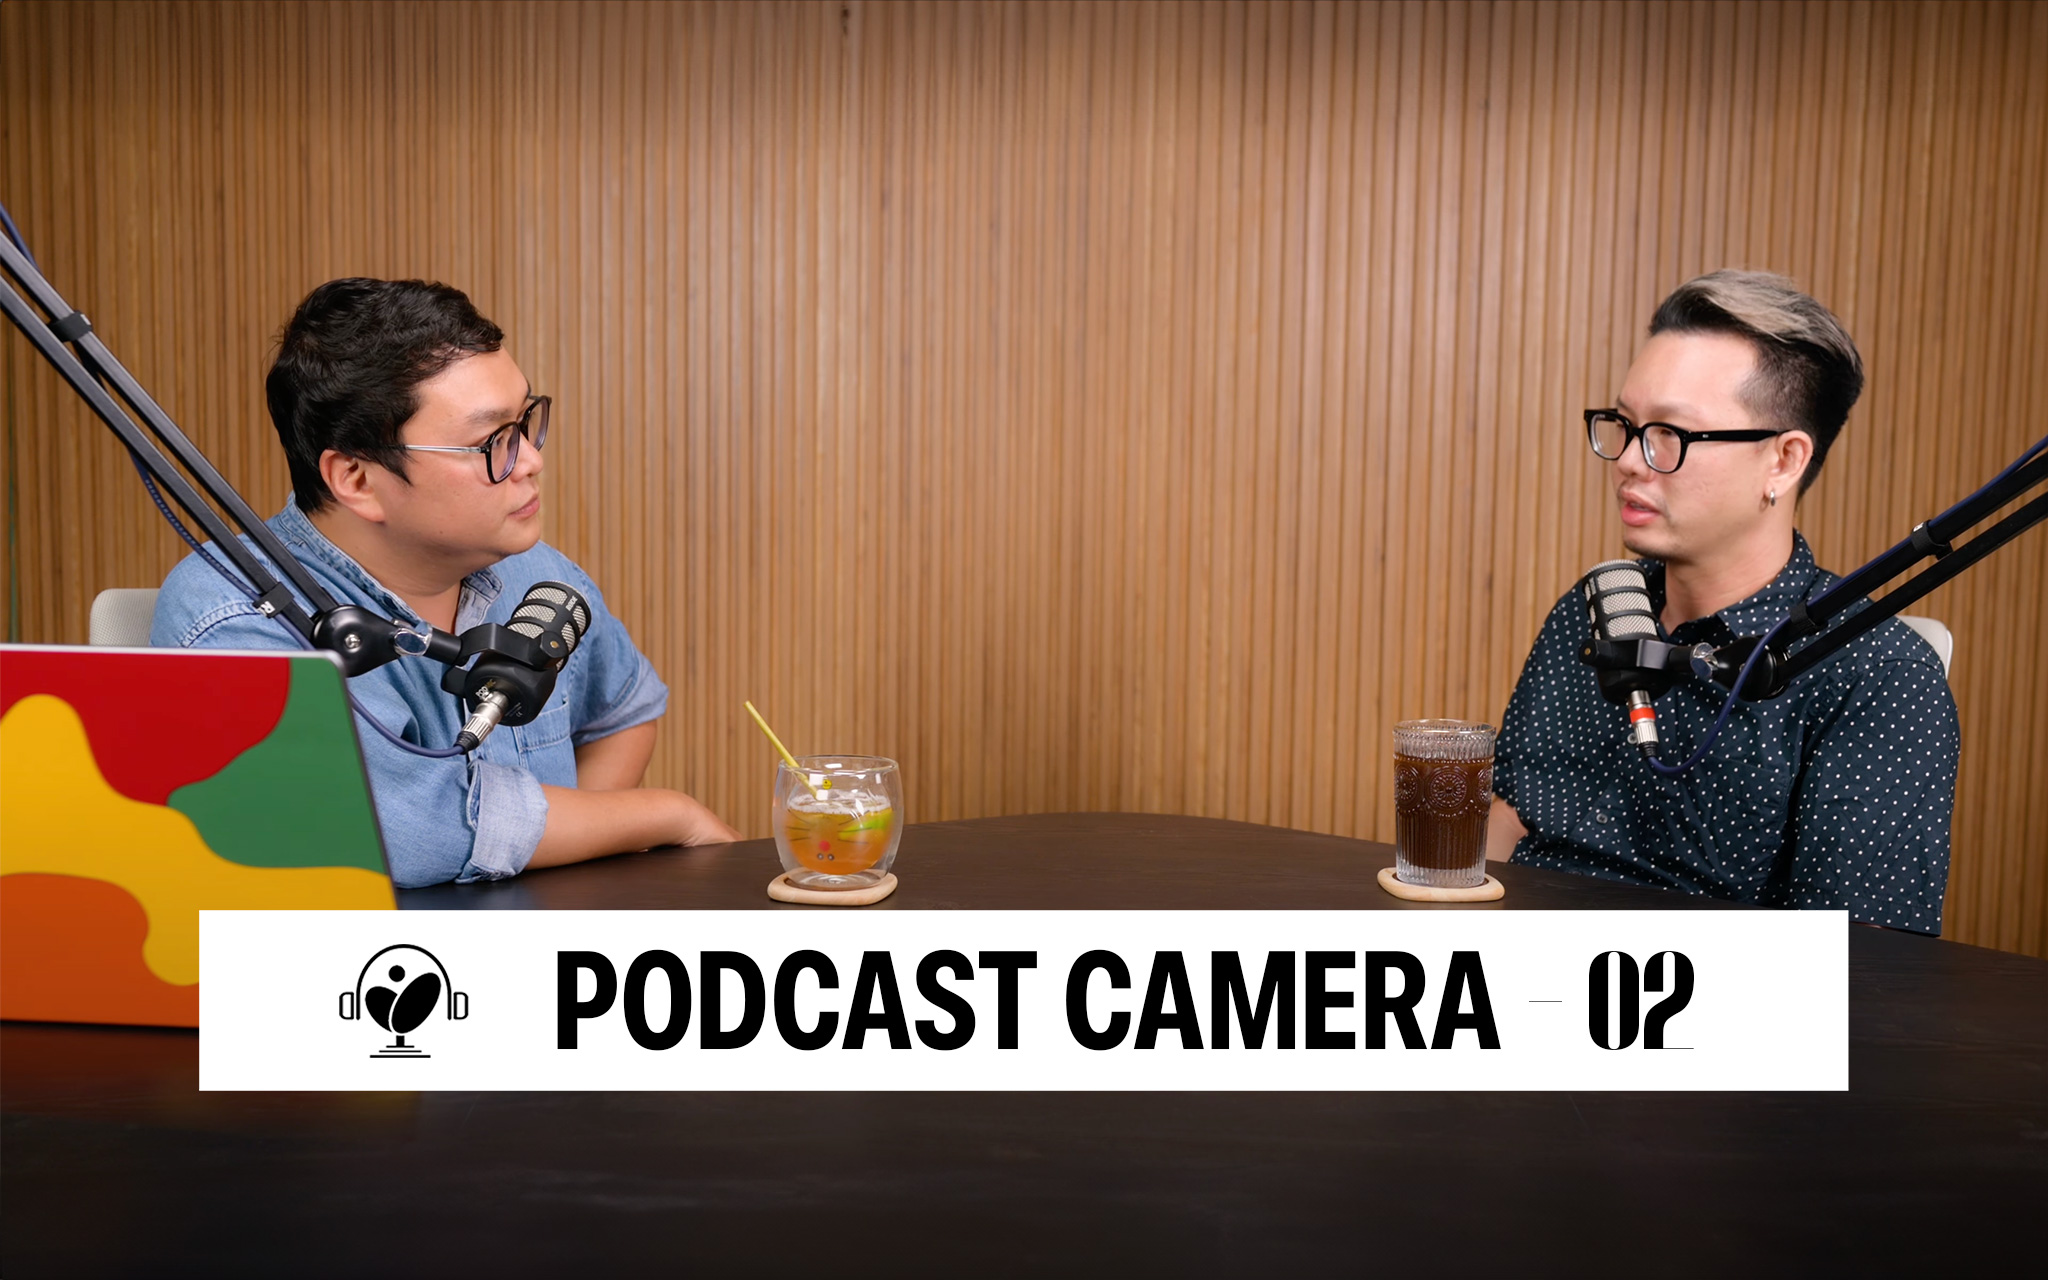 Podcast camera 02: 1 tiếng nghe "Sếp" của Cuhiep chia sẻ về Youtube, thiết bị, nội dung nhiều view?